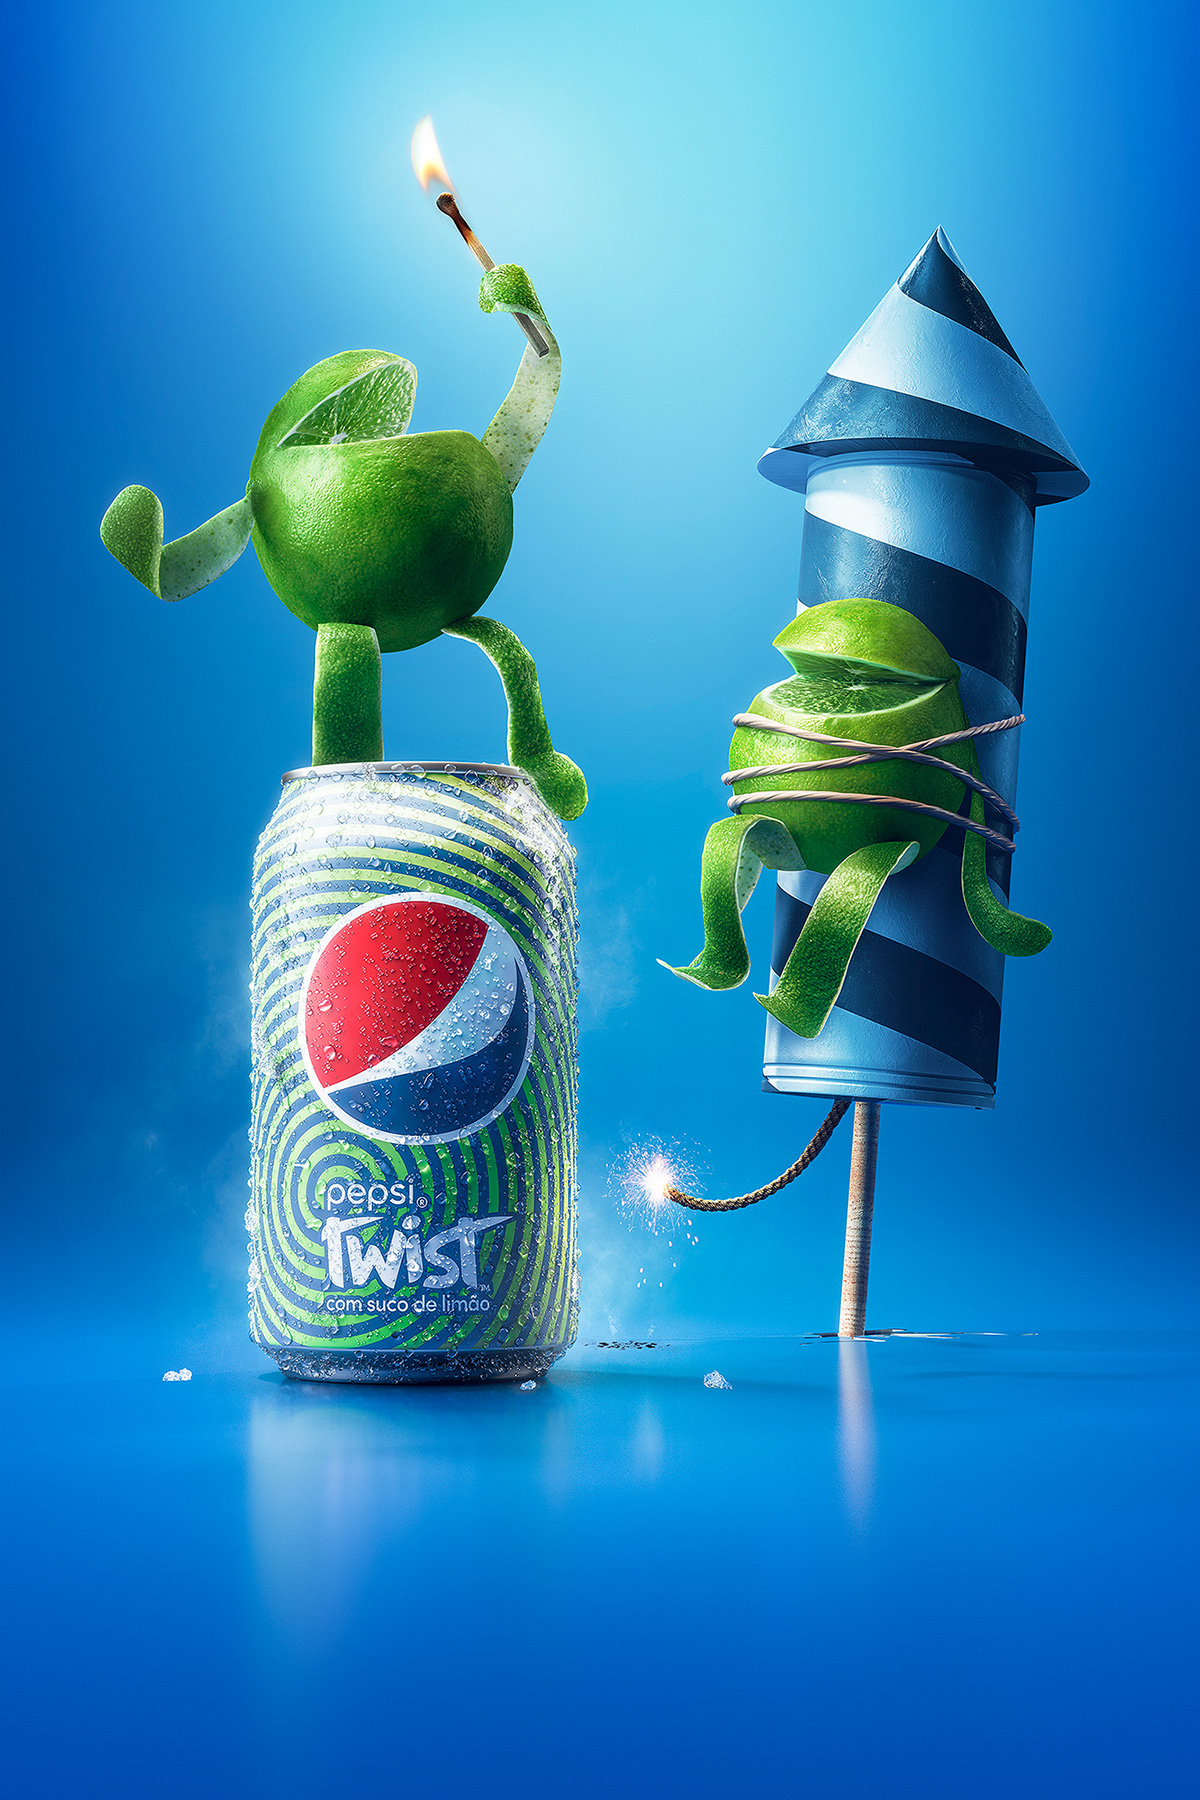 Pepsi Twist pepsi limes Limões soda lightfarm brasil lightfarm studios lightfarm